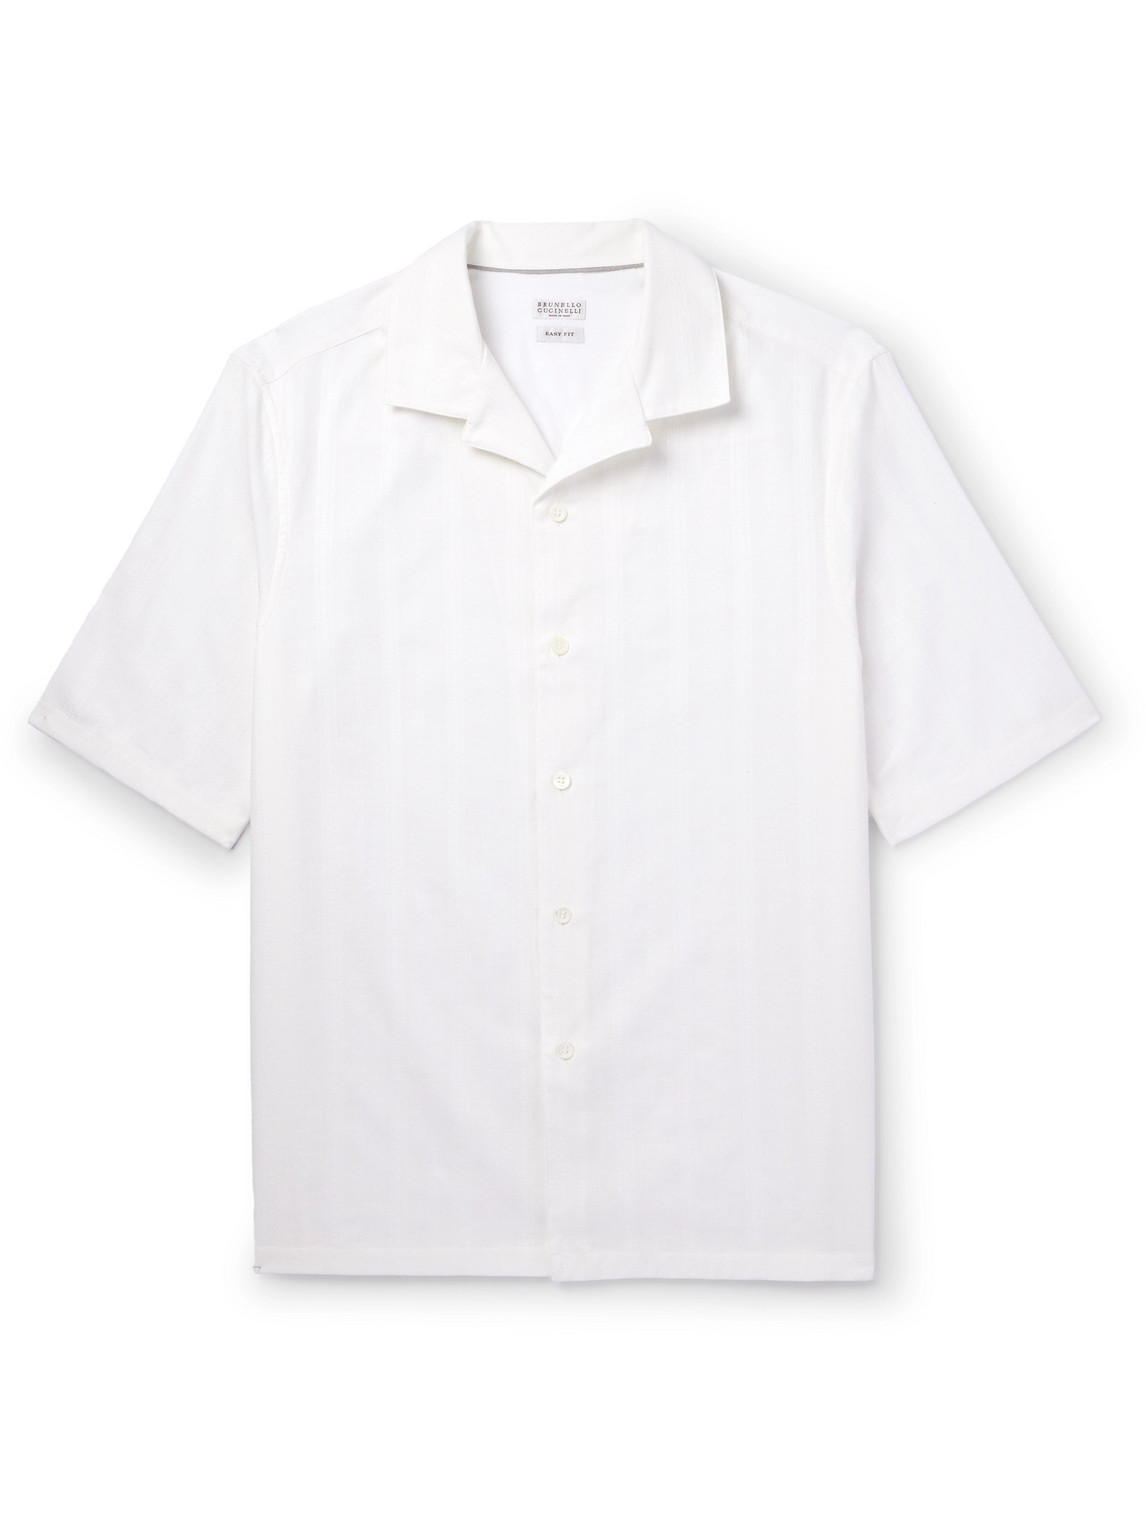 Brunello Cucinelli - Camp-Collar Striped Textured-Cotton Shirt - Men - White - L von Brunello Cucinelli